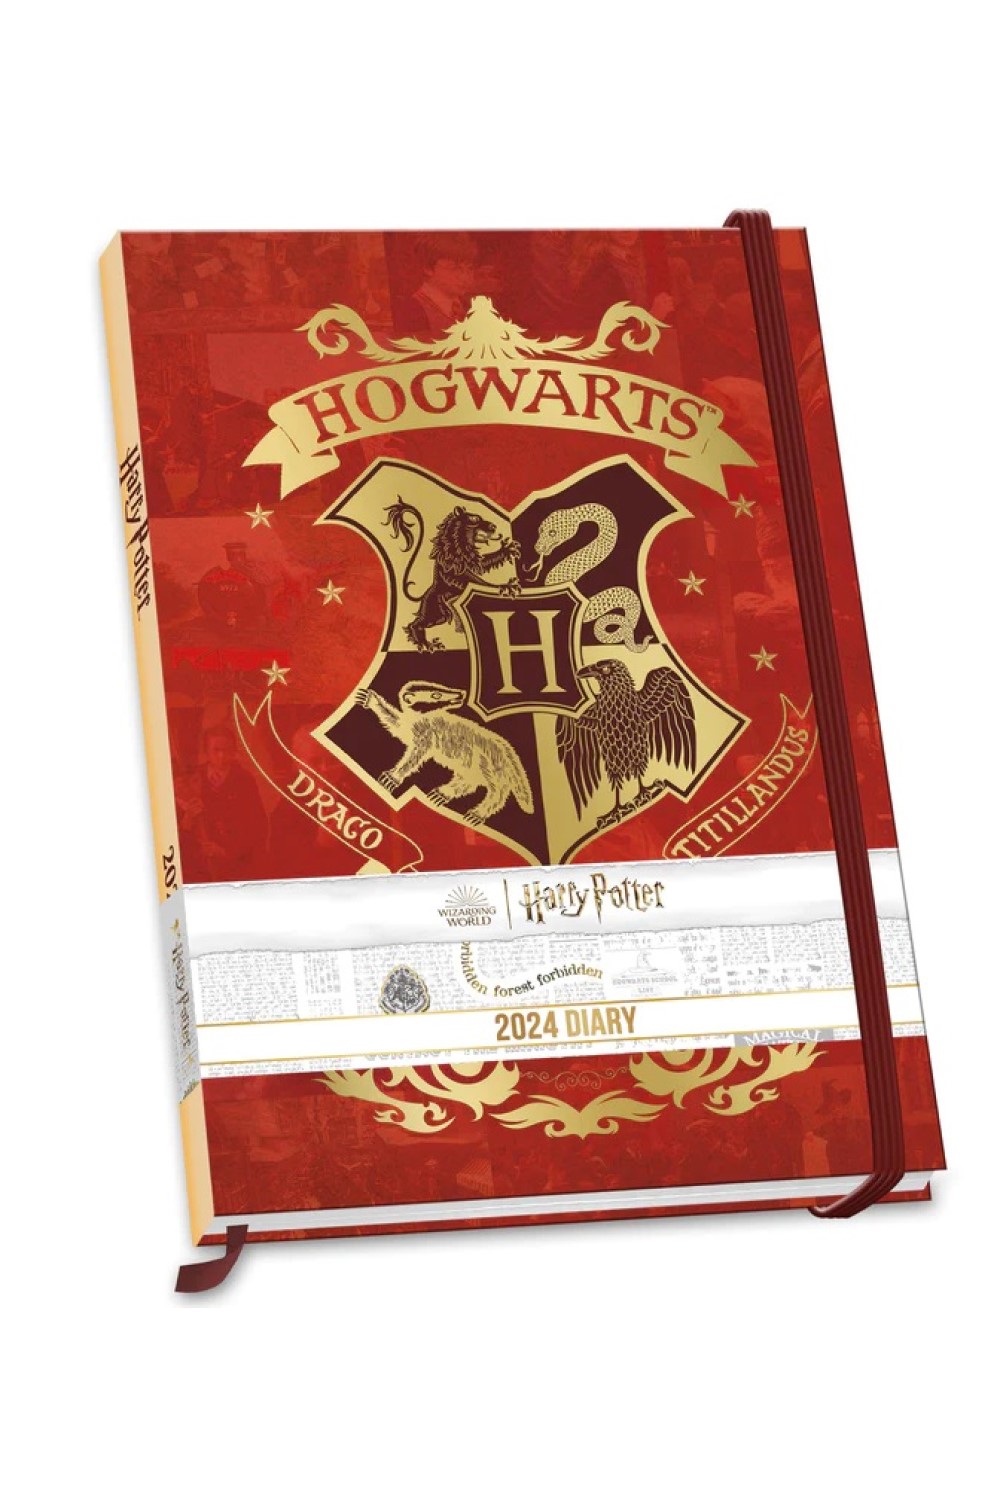 Acheter Harry Potter A5 Diary 2024 ? Commande en ligne rapidement